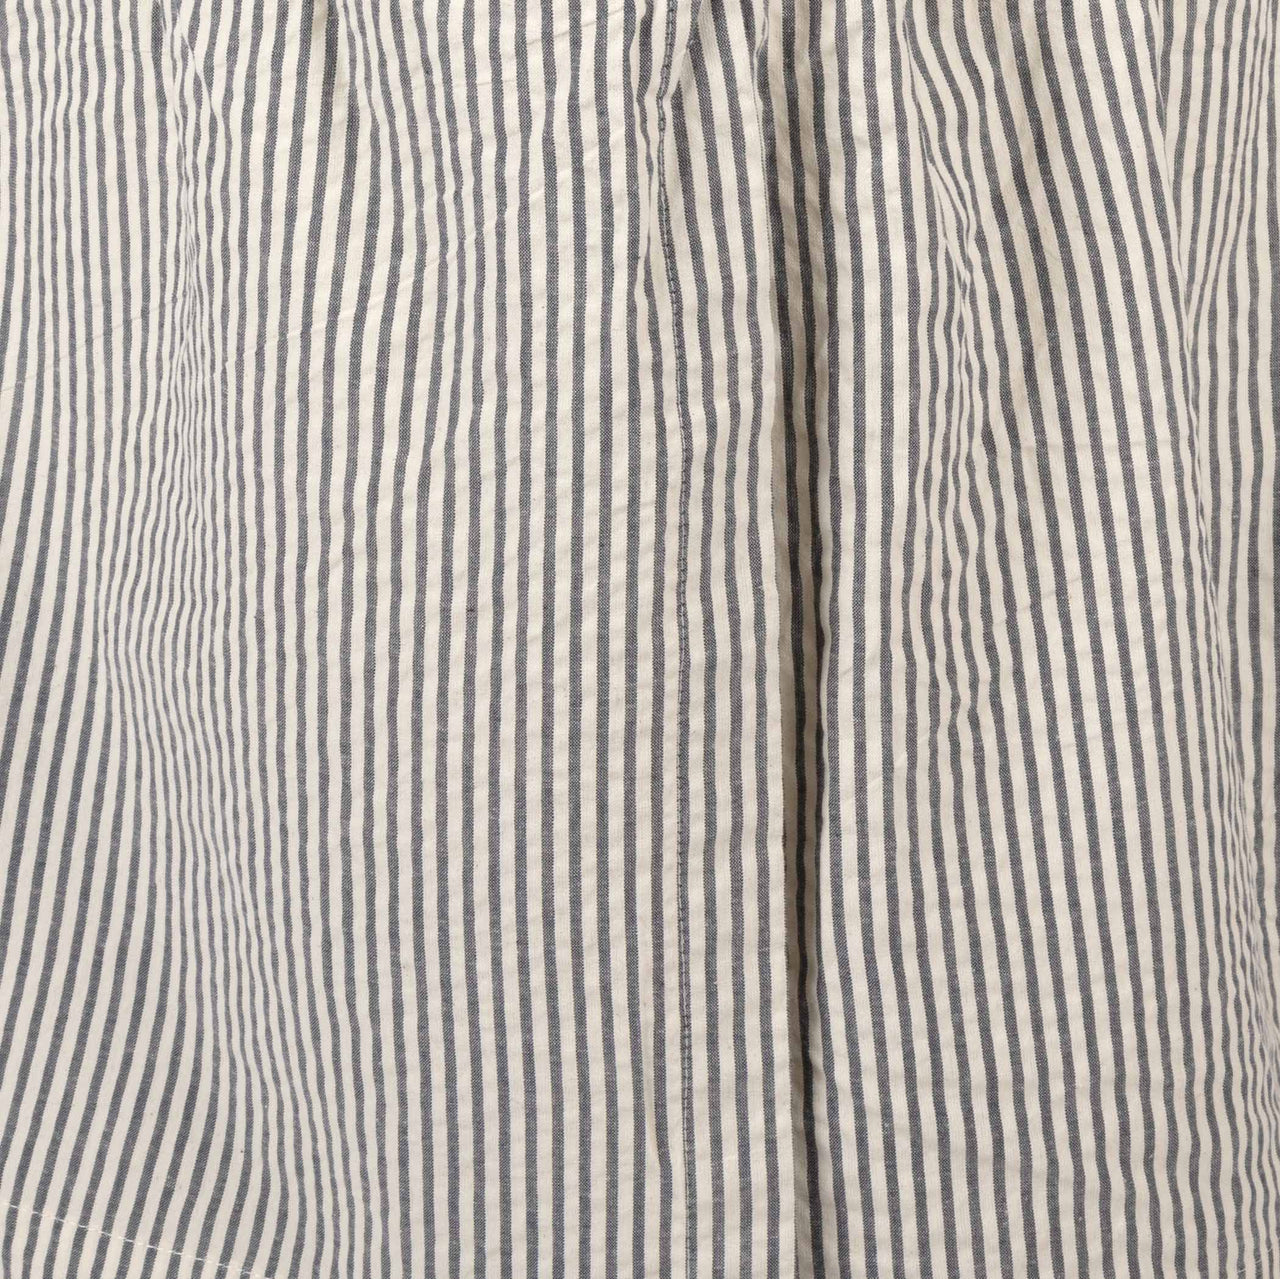 Hatteras Seersucker Blue Ticking Stripe Bed Skirts VHC Brands